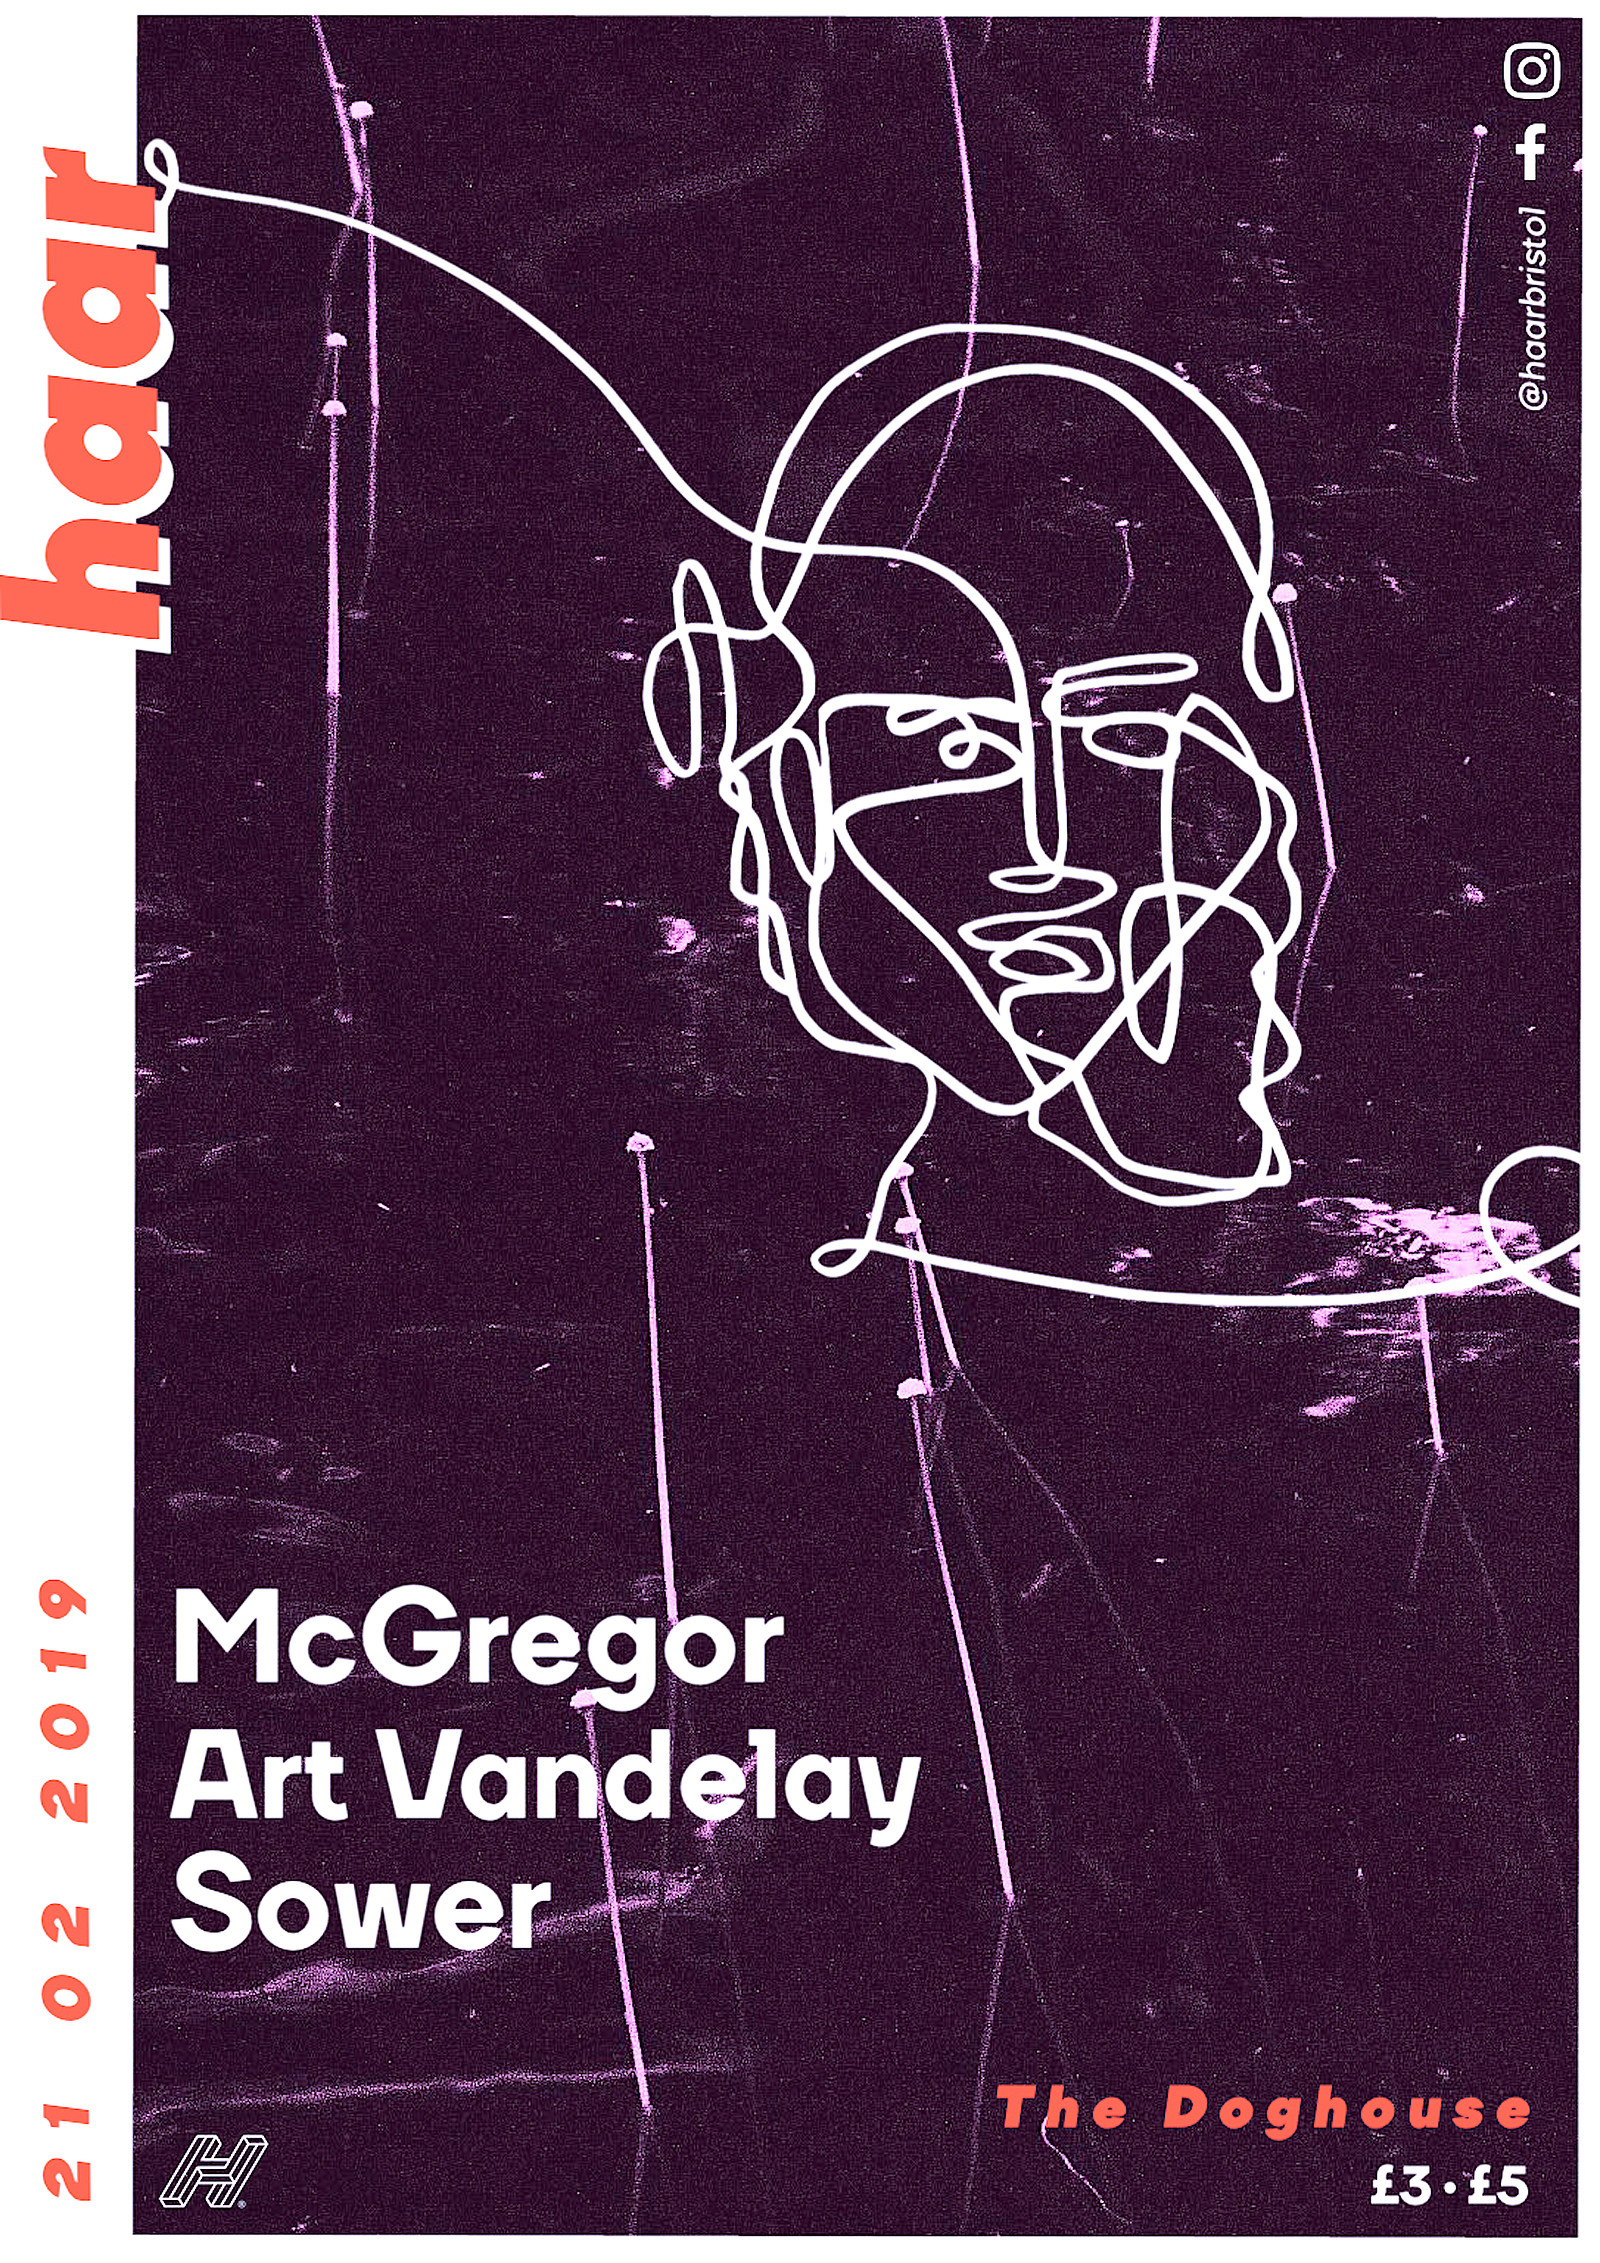 Haar | McGregor, Art Vandelay & Sower at The Doghouse